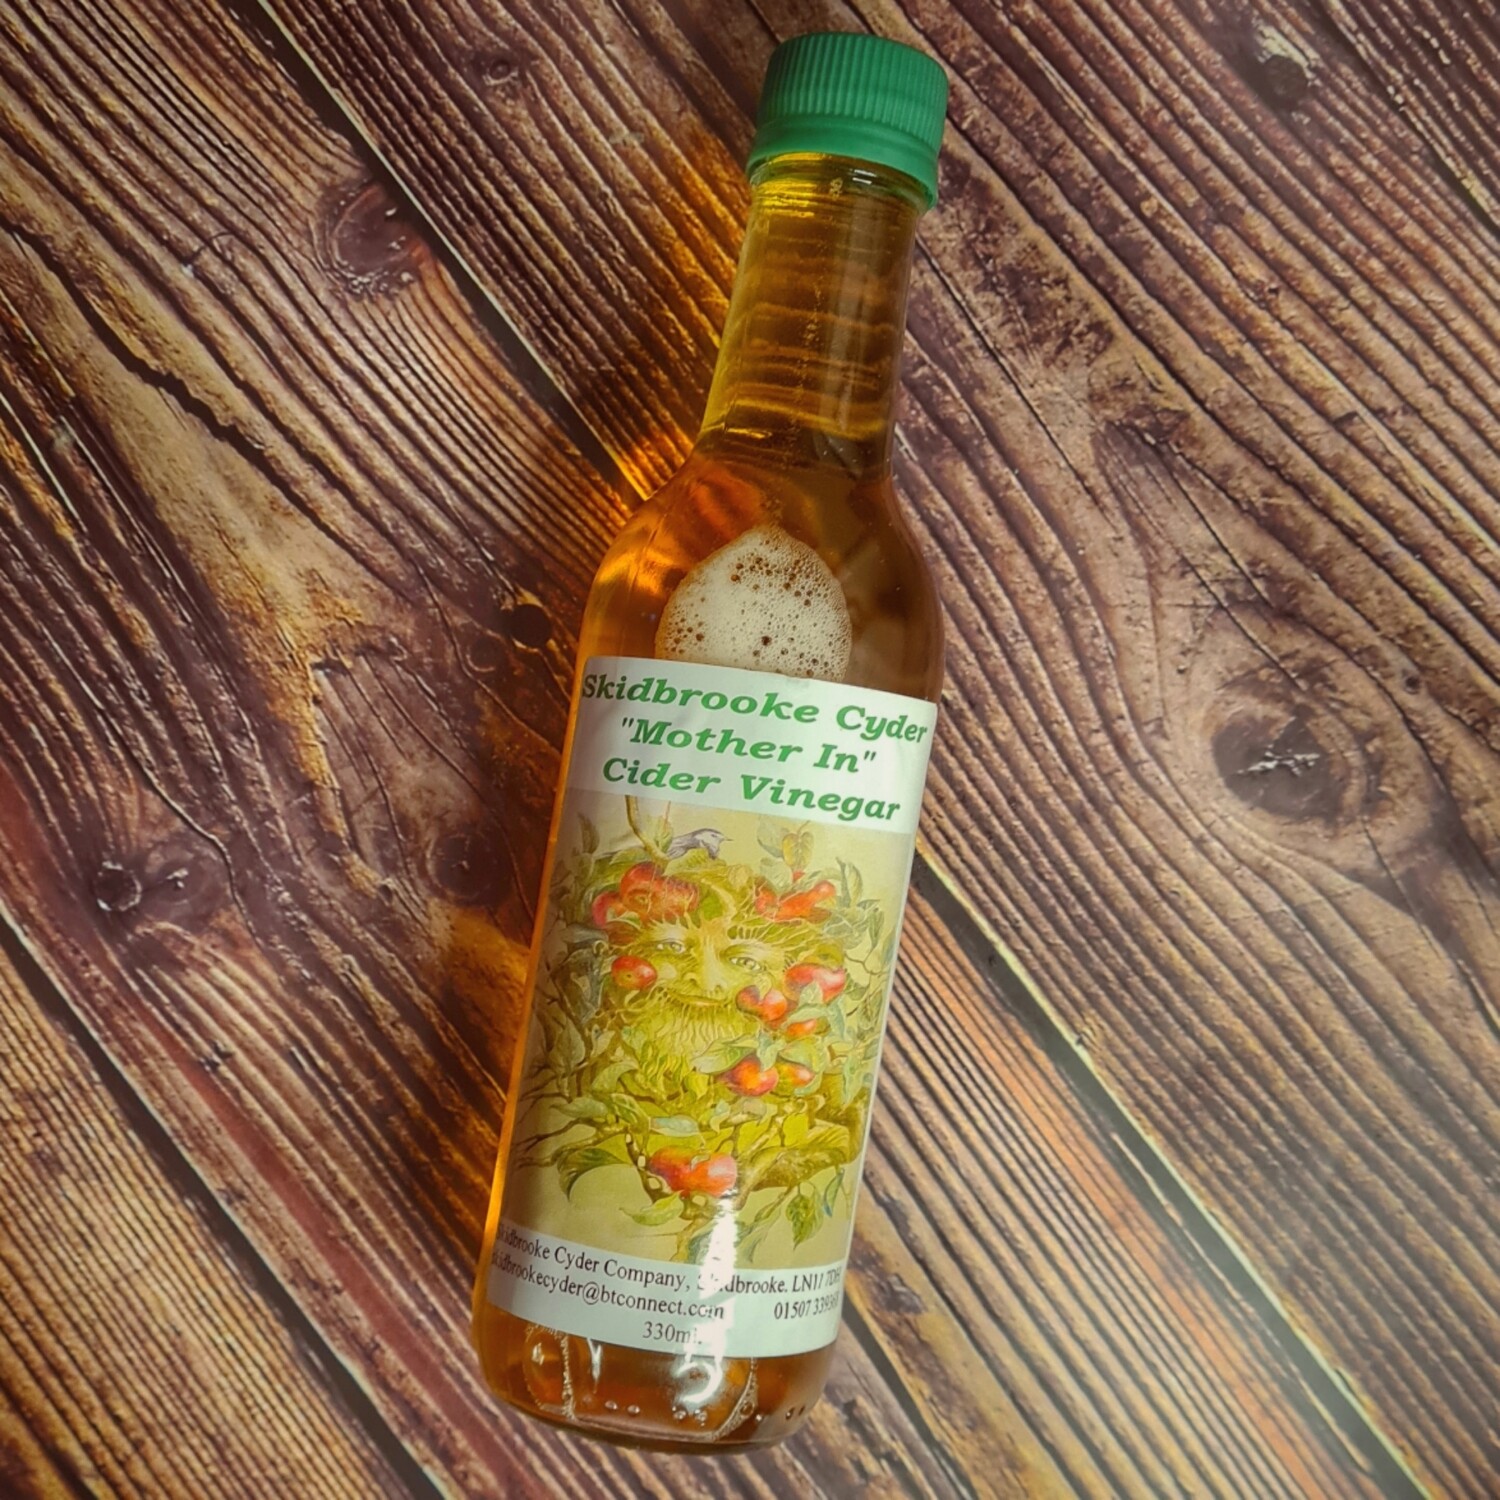 Skidbrooke Cider Vinegar